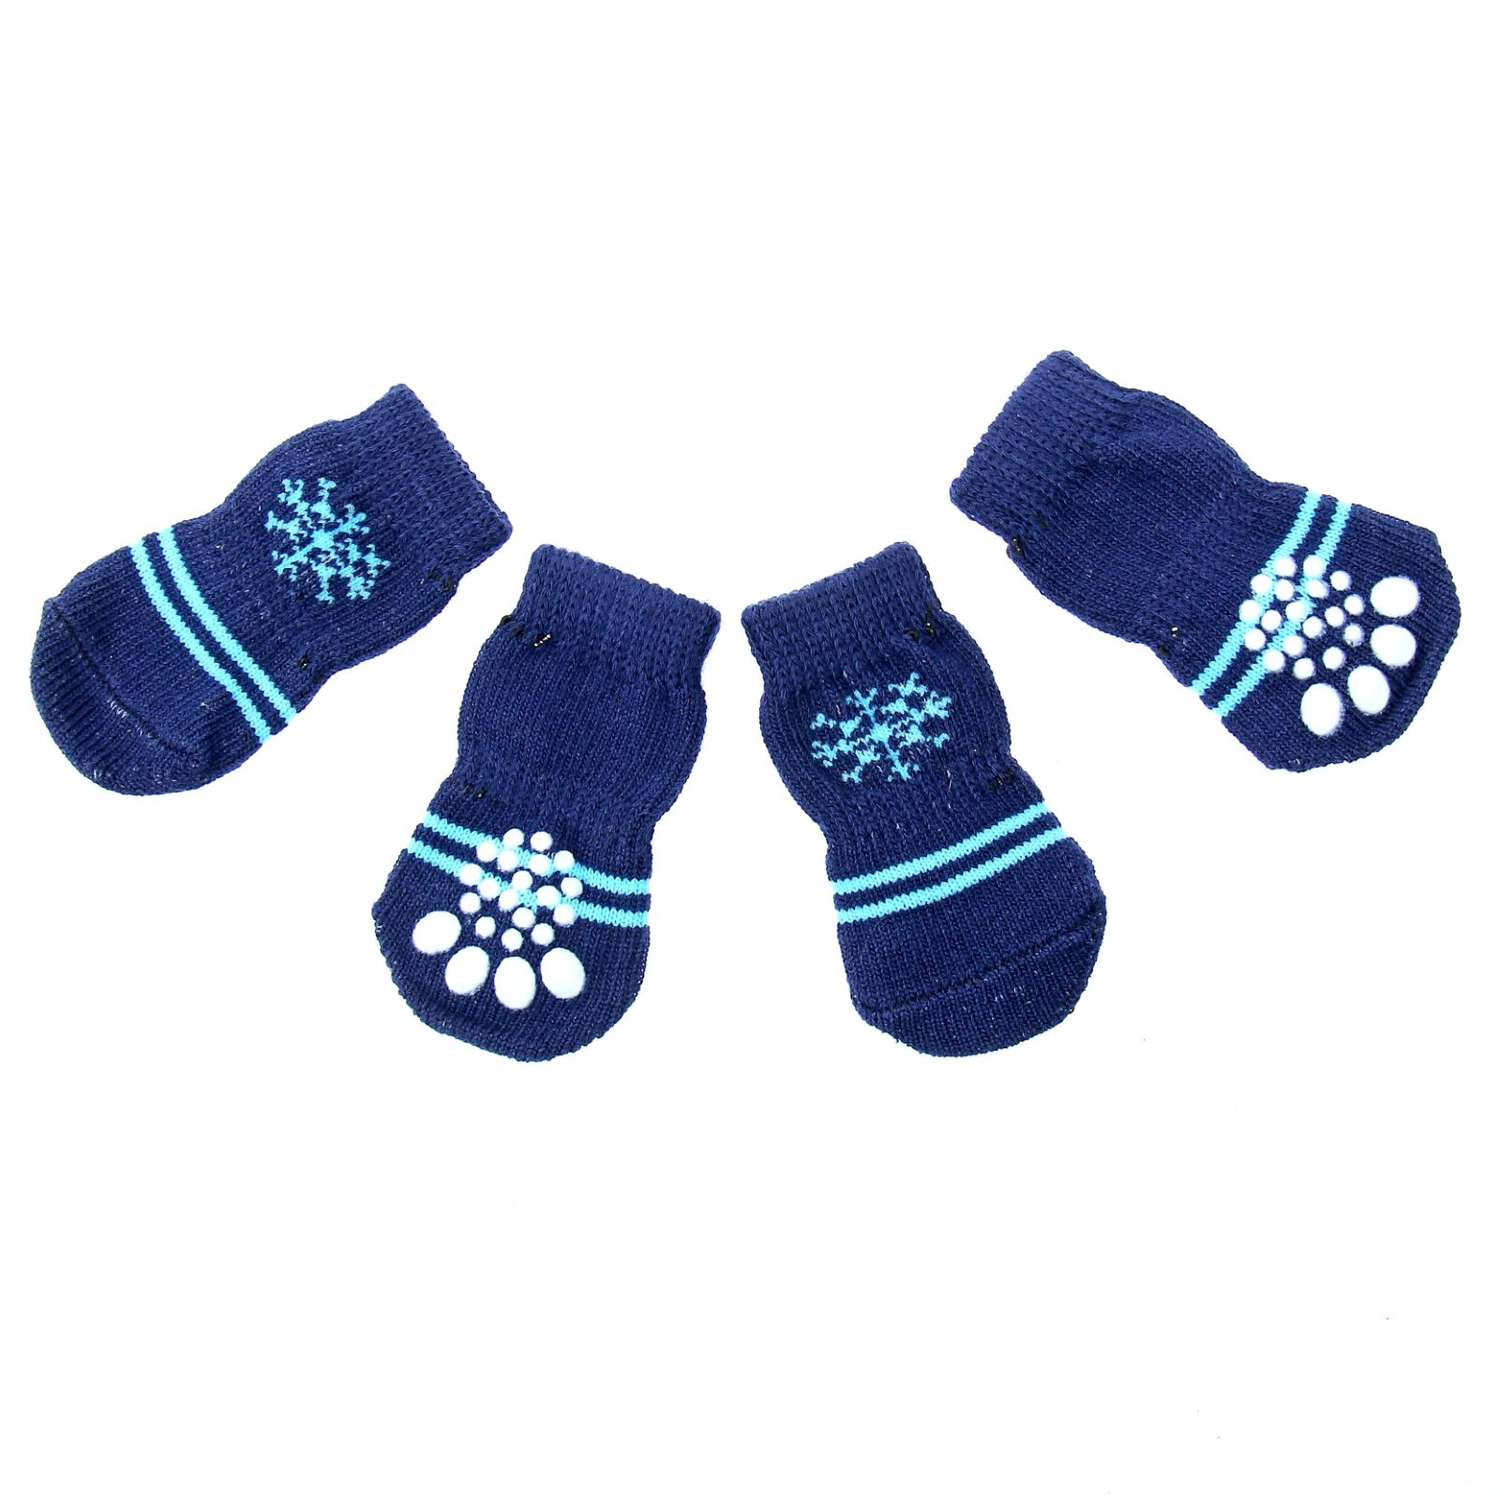 Носки Пижон Снежинка размер L нескользящие 4 шт темно-синие - фото 1